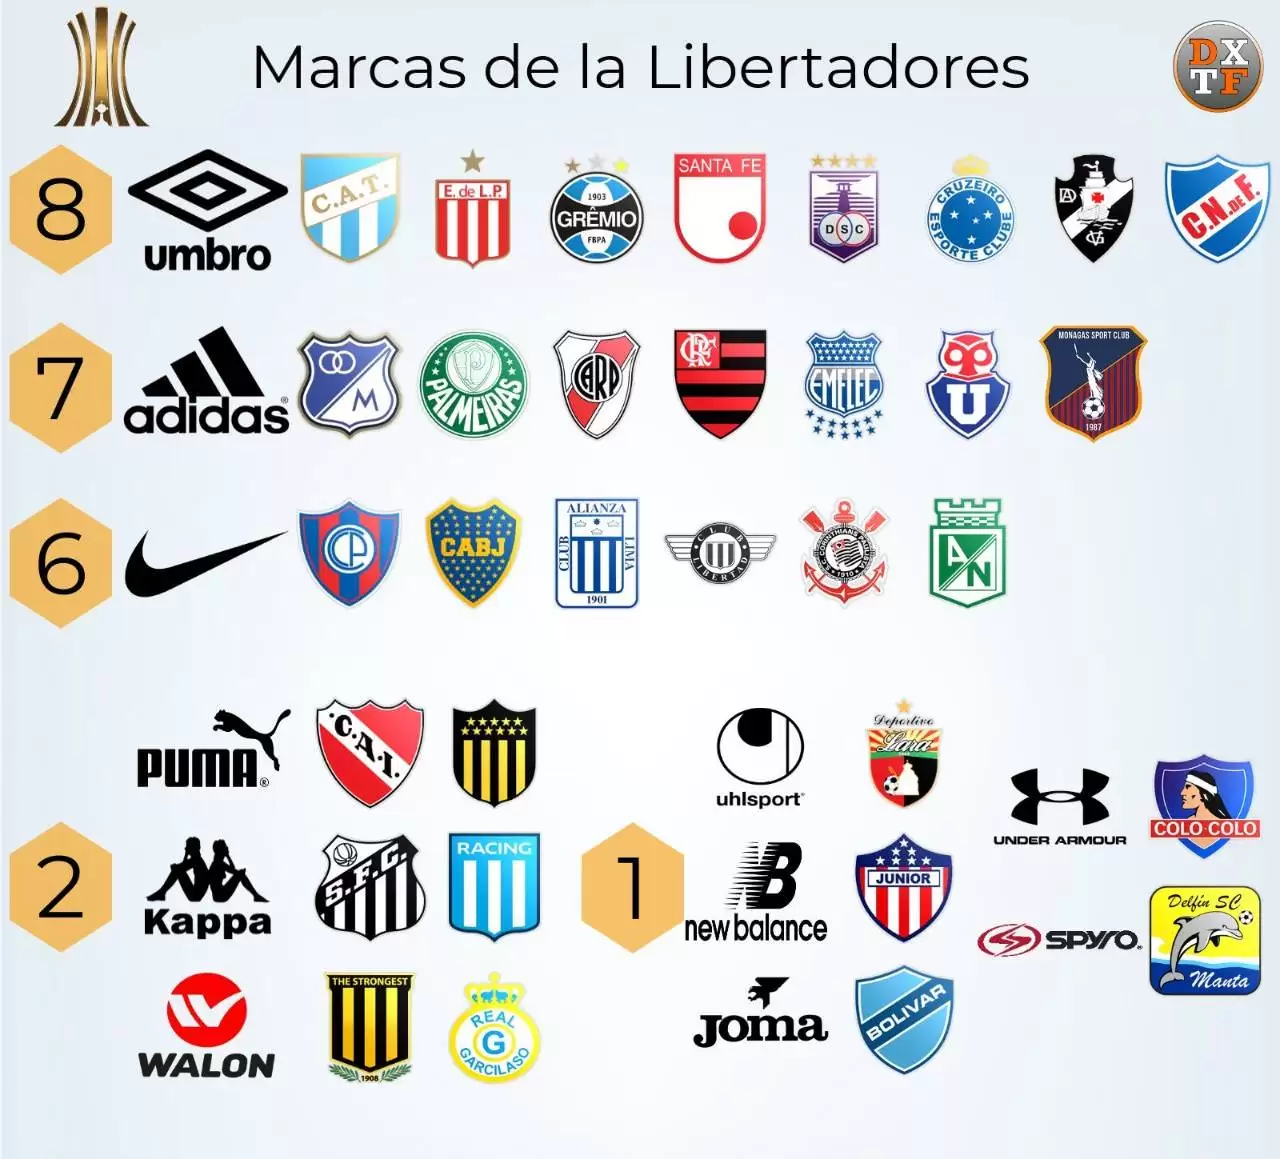 Me preparé Involucrado limpiar Con Umbro y adidas a la cabeza estas son las marcas de todos los equipos de  la CONMEBOL Libertadores | Marketing Registrado